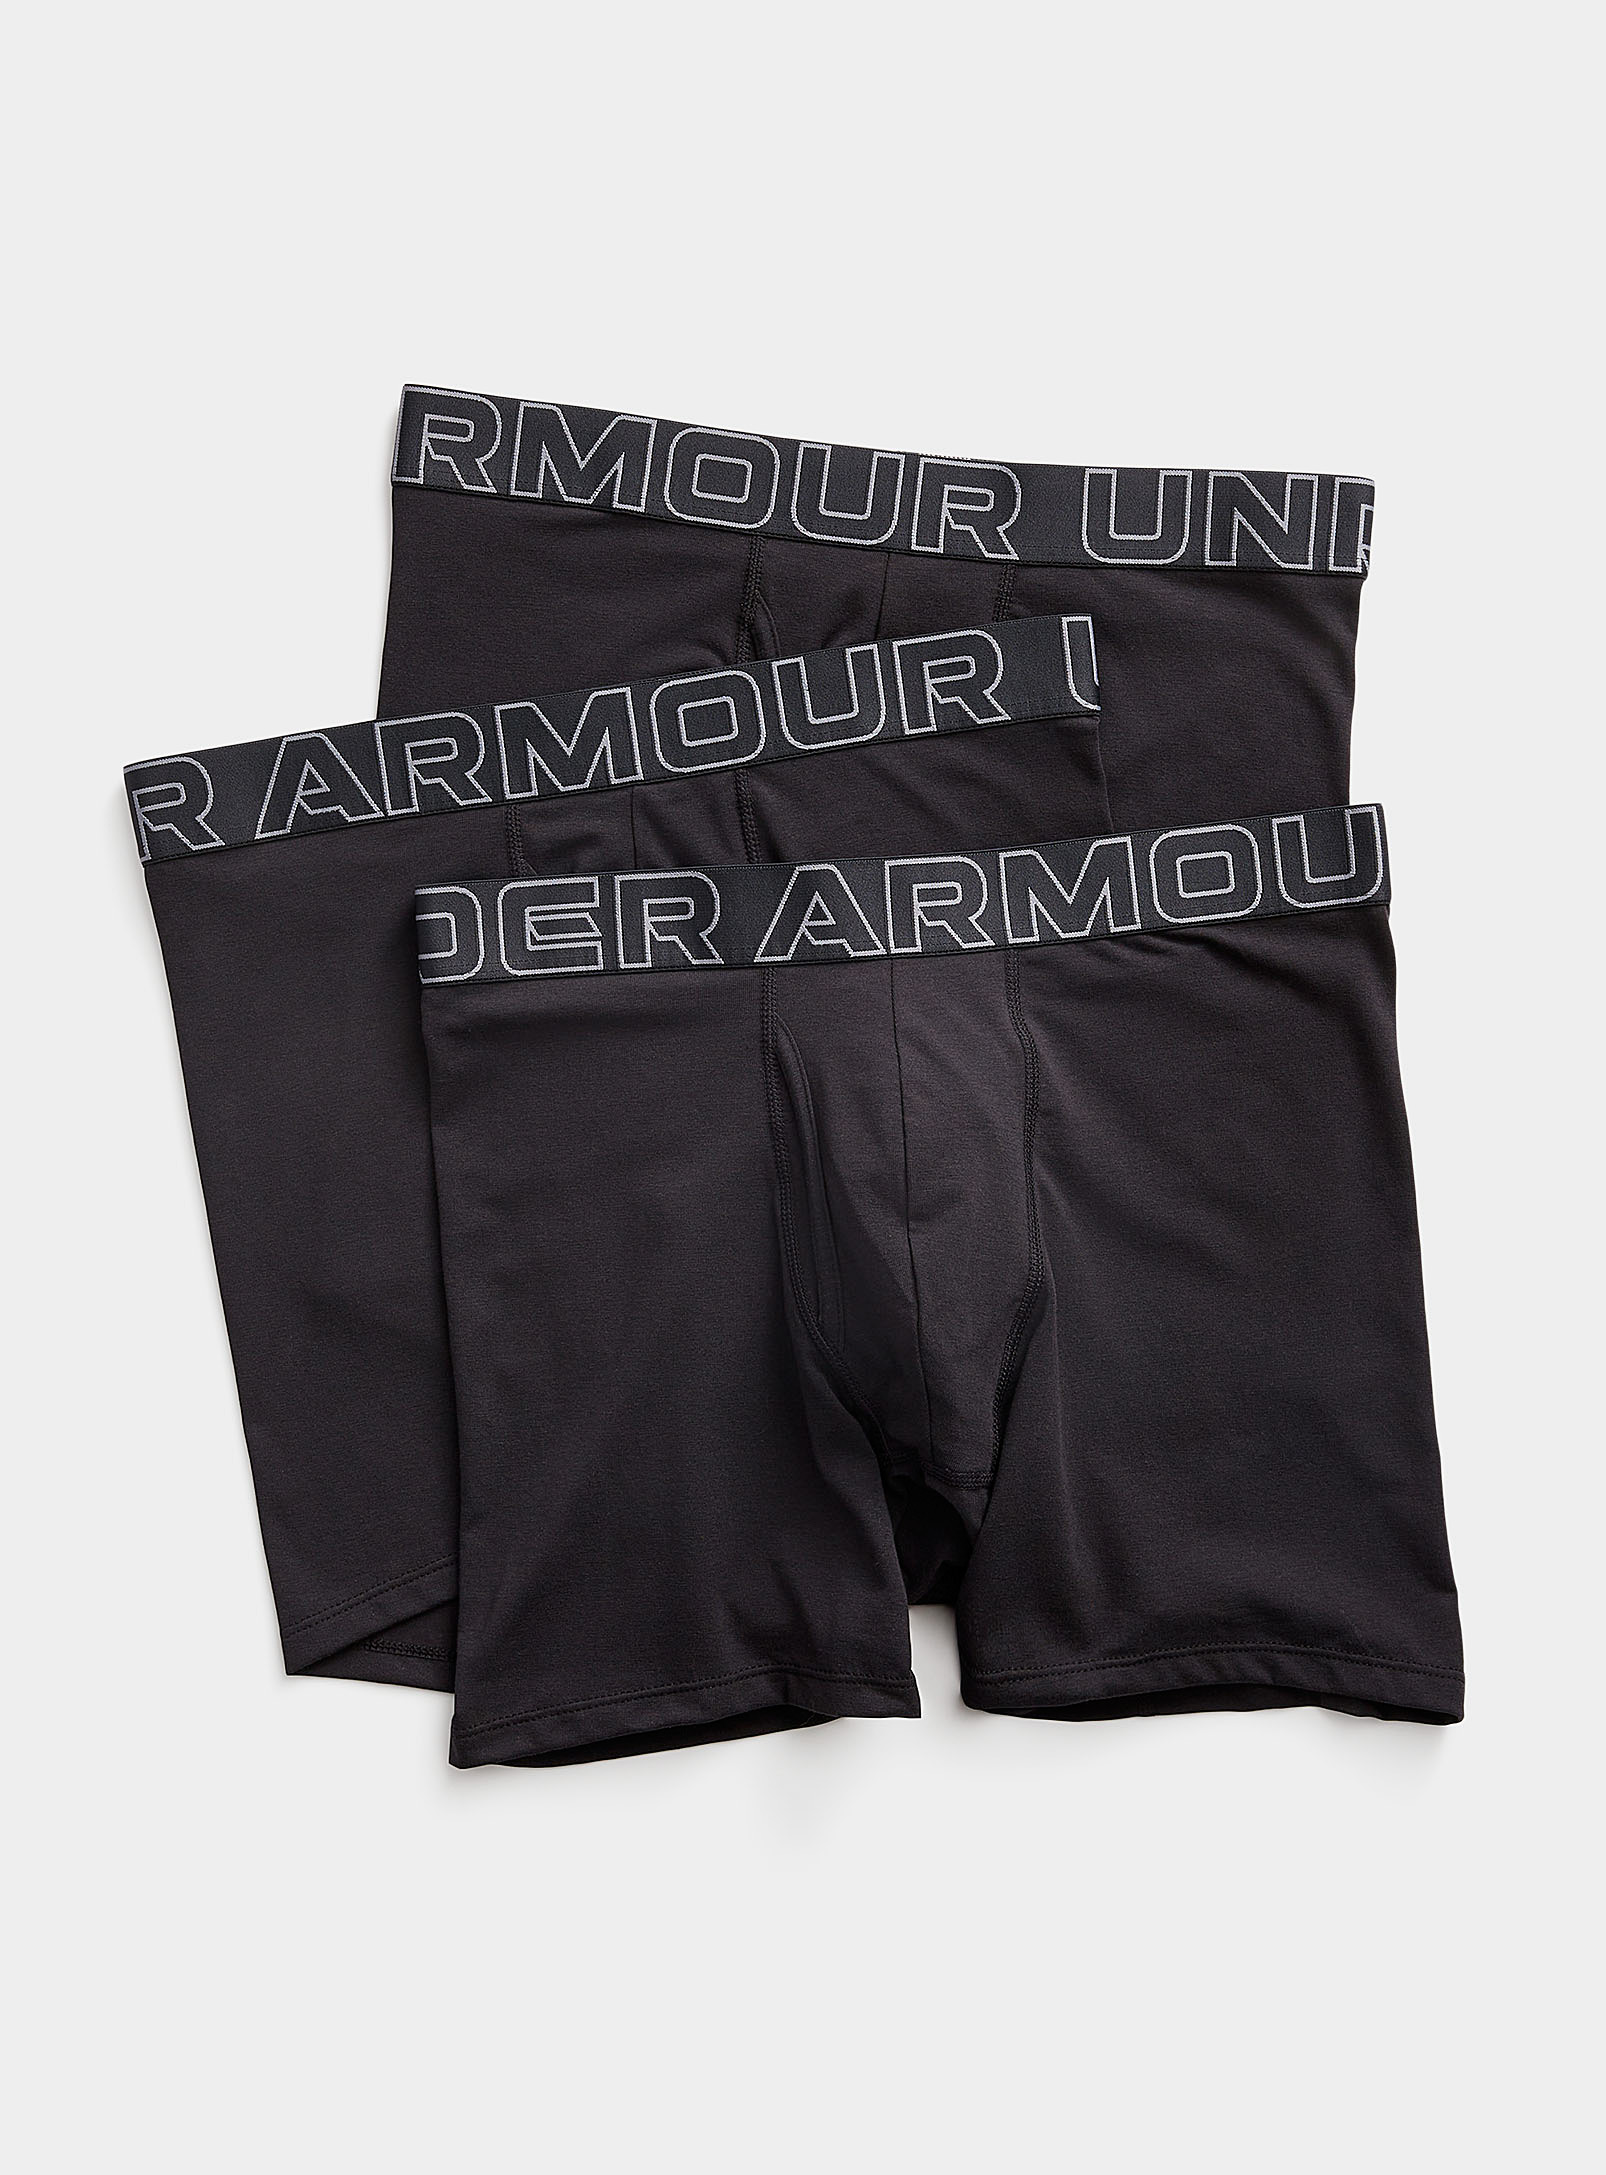 Under Armour - Les boxeurs longs performants Boxerjock noirs Emballage de 3